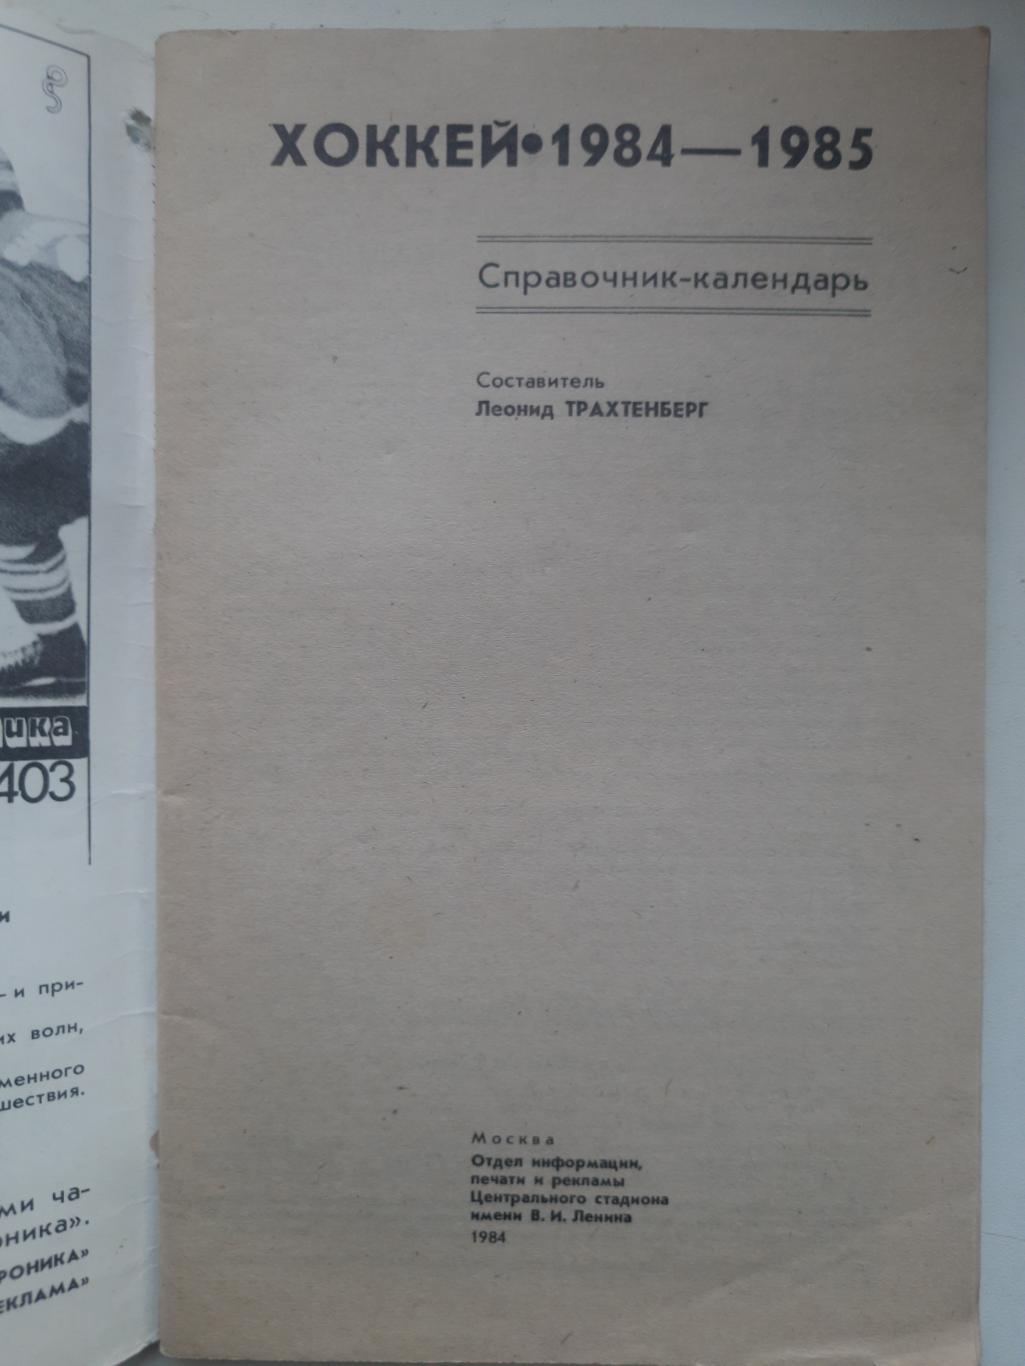 календарь-справочник,Москва 1984/85 1